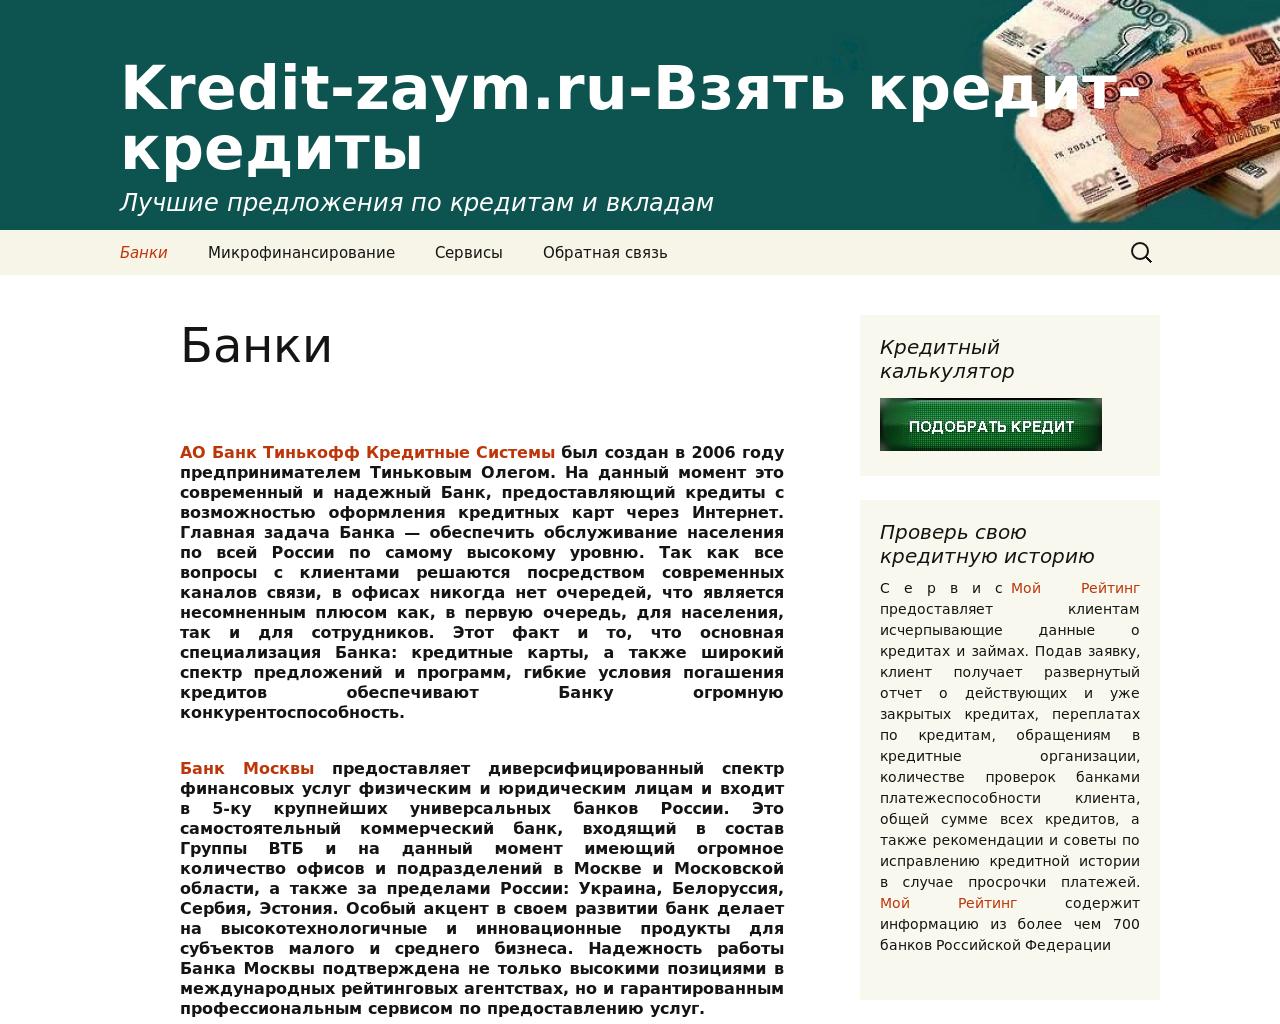 Изображение сайта kredit-zaym.ru в разрешении 1280x1024